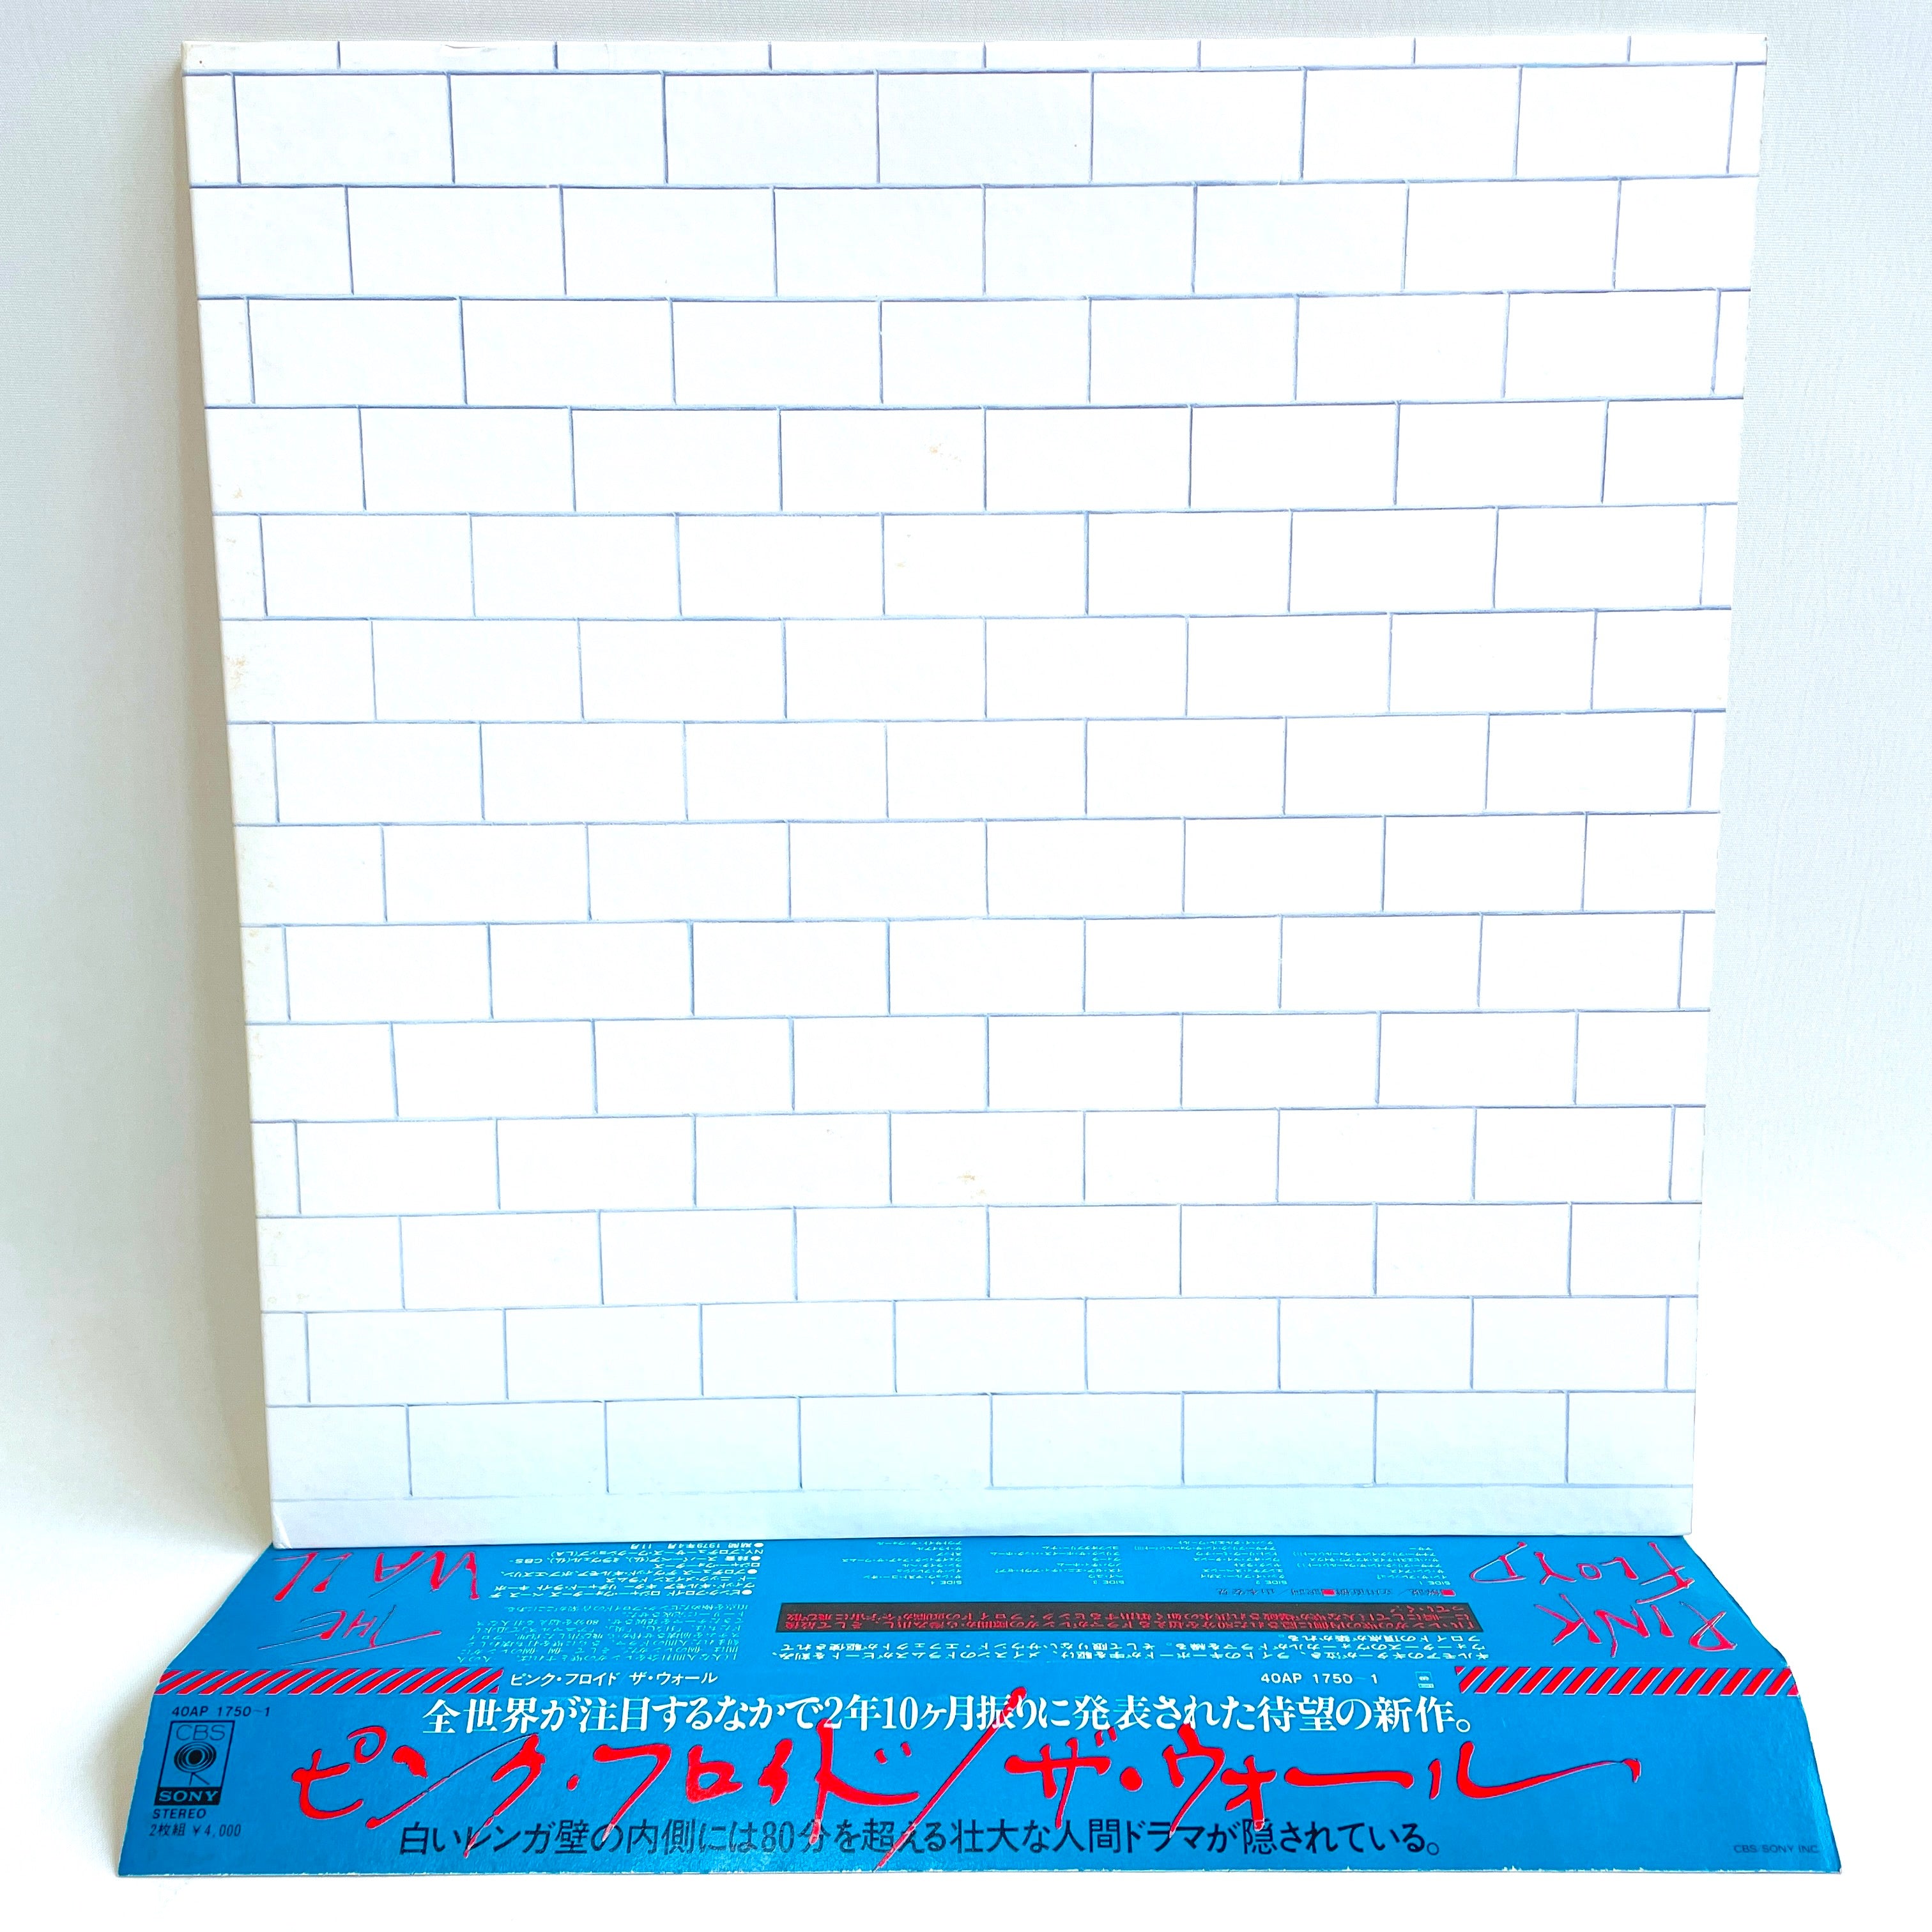 LPレコード 「ザ・ウォール」ピンク・フロイド 40AP 1750〜1-